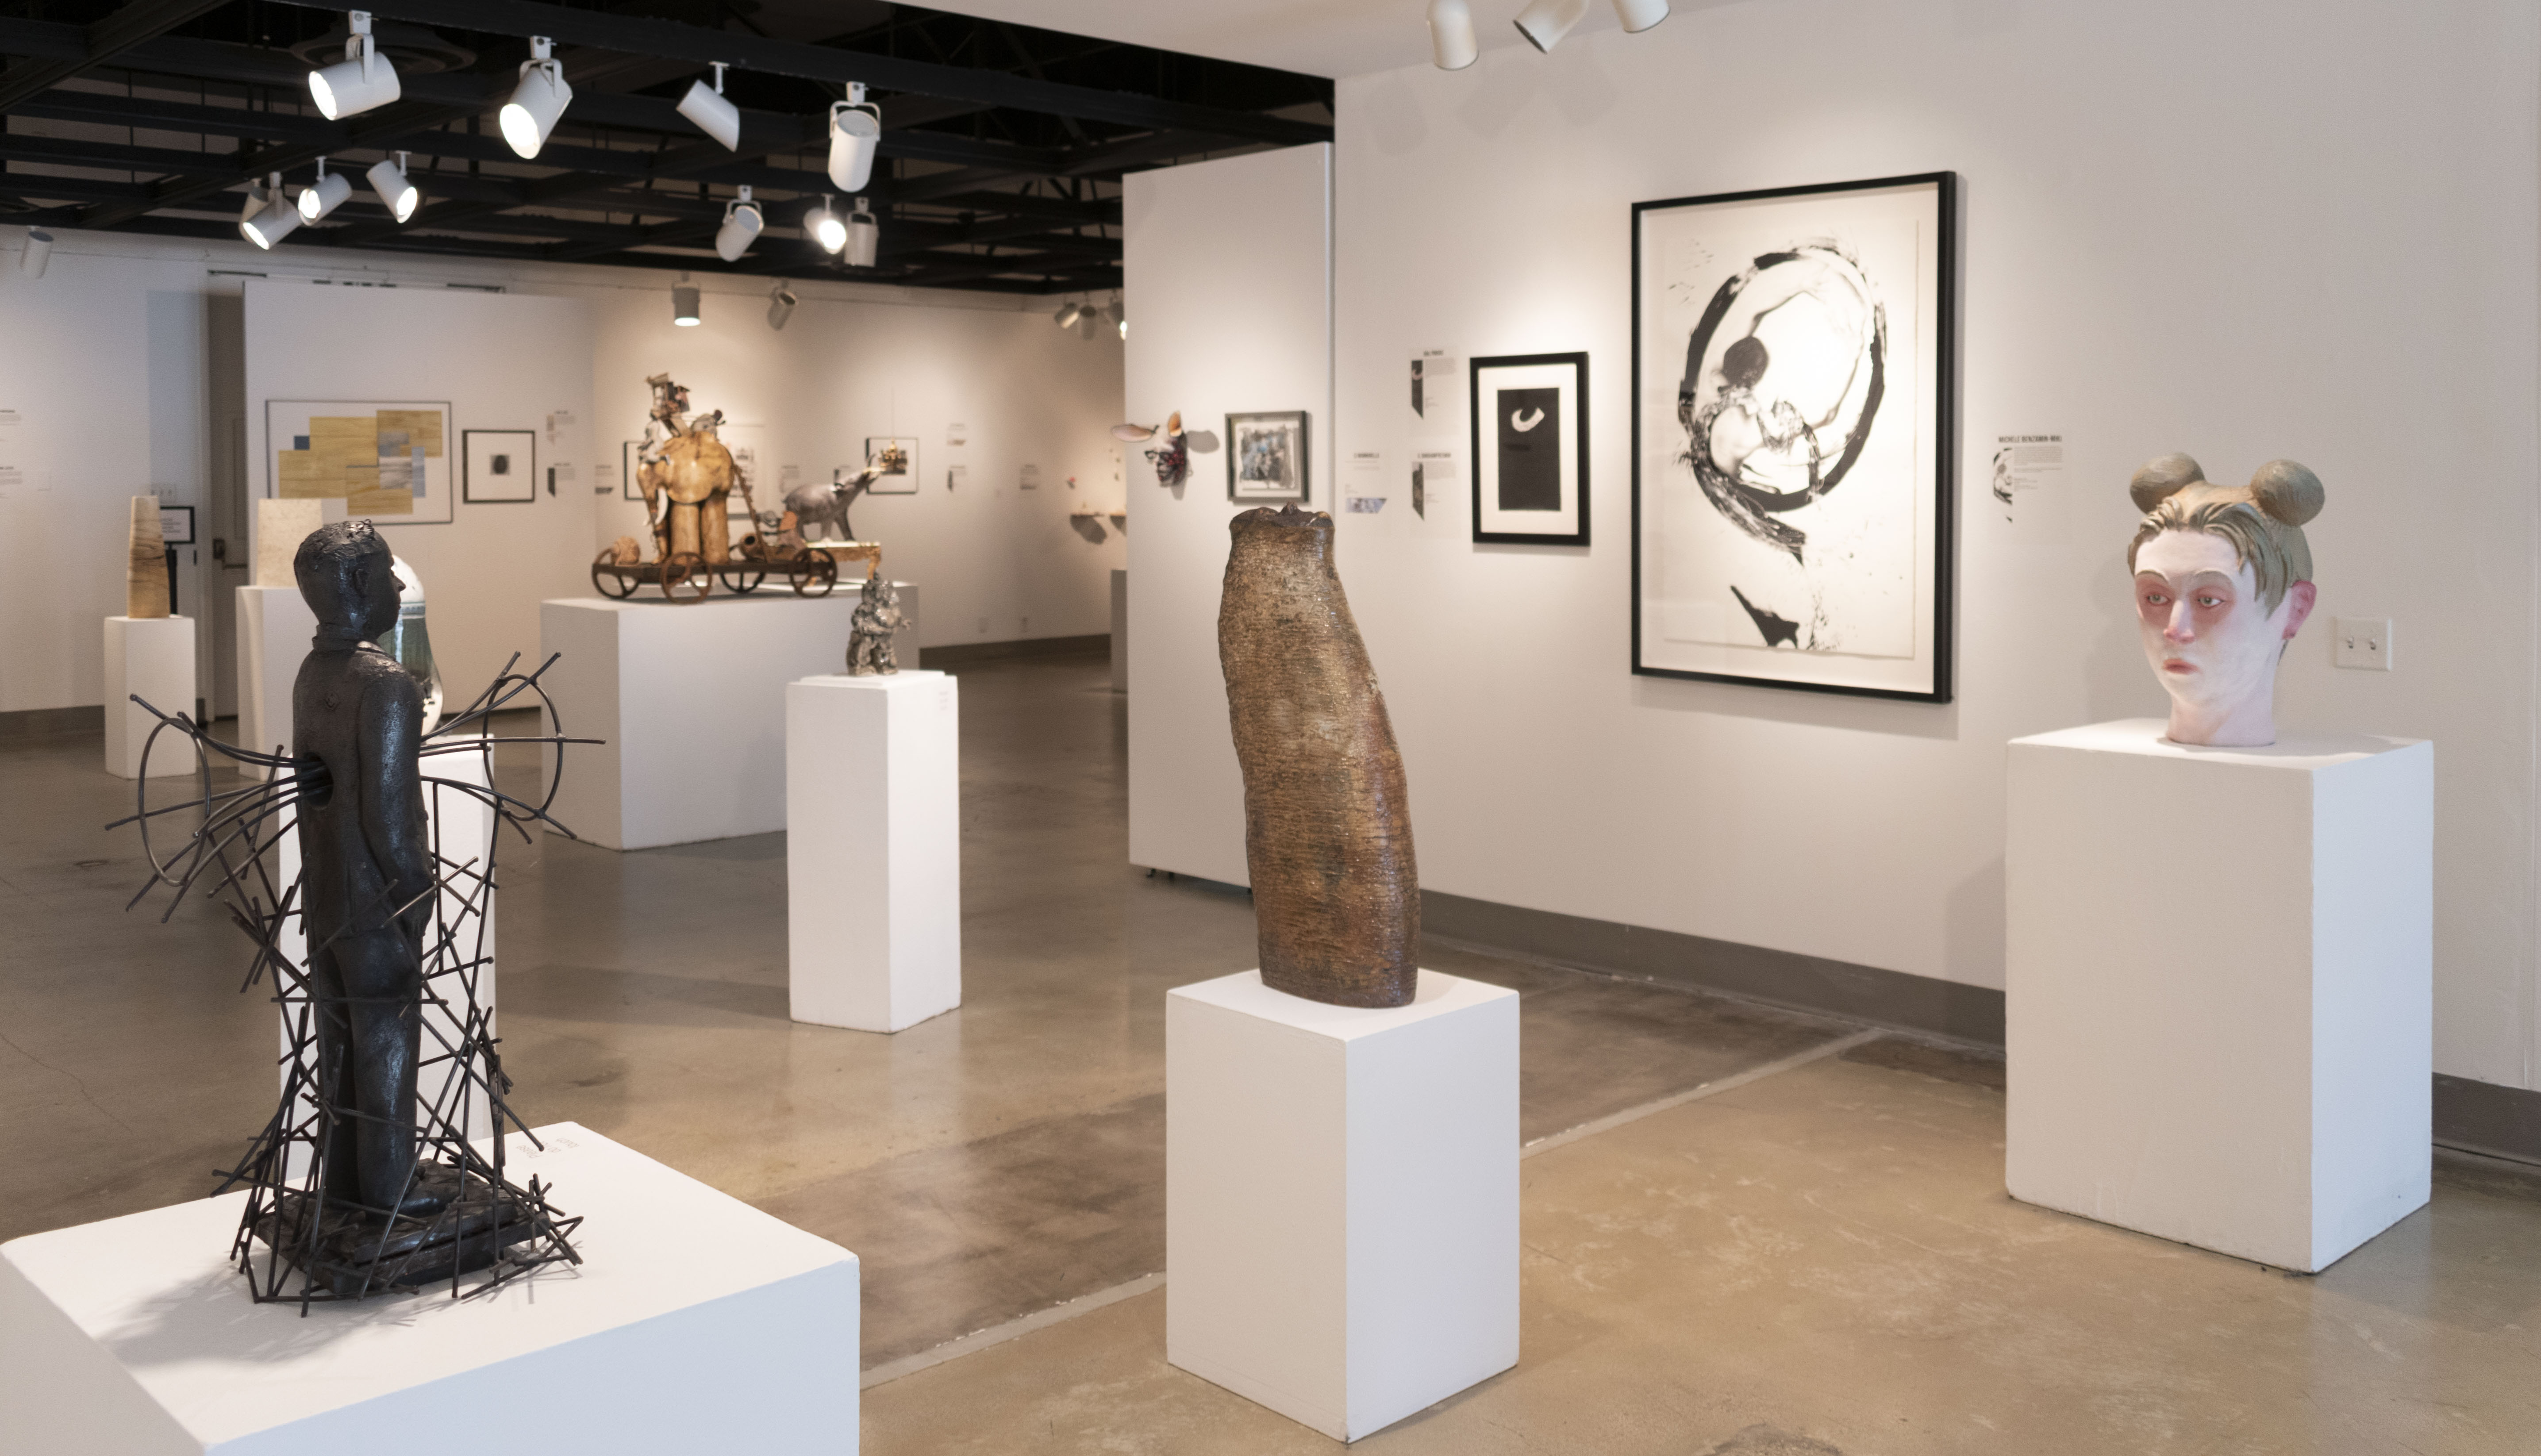 Installation View, Corridor of Gallery, Ink & Clay 44 Exhibition